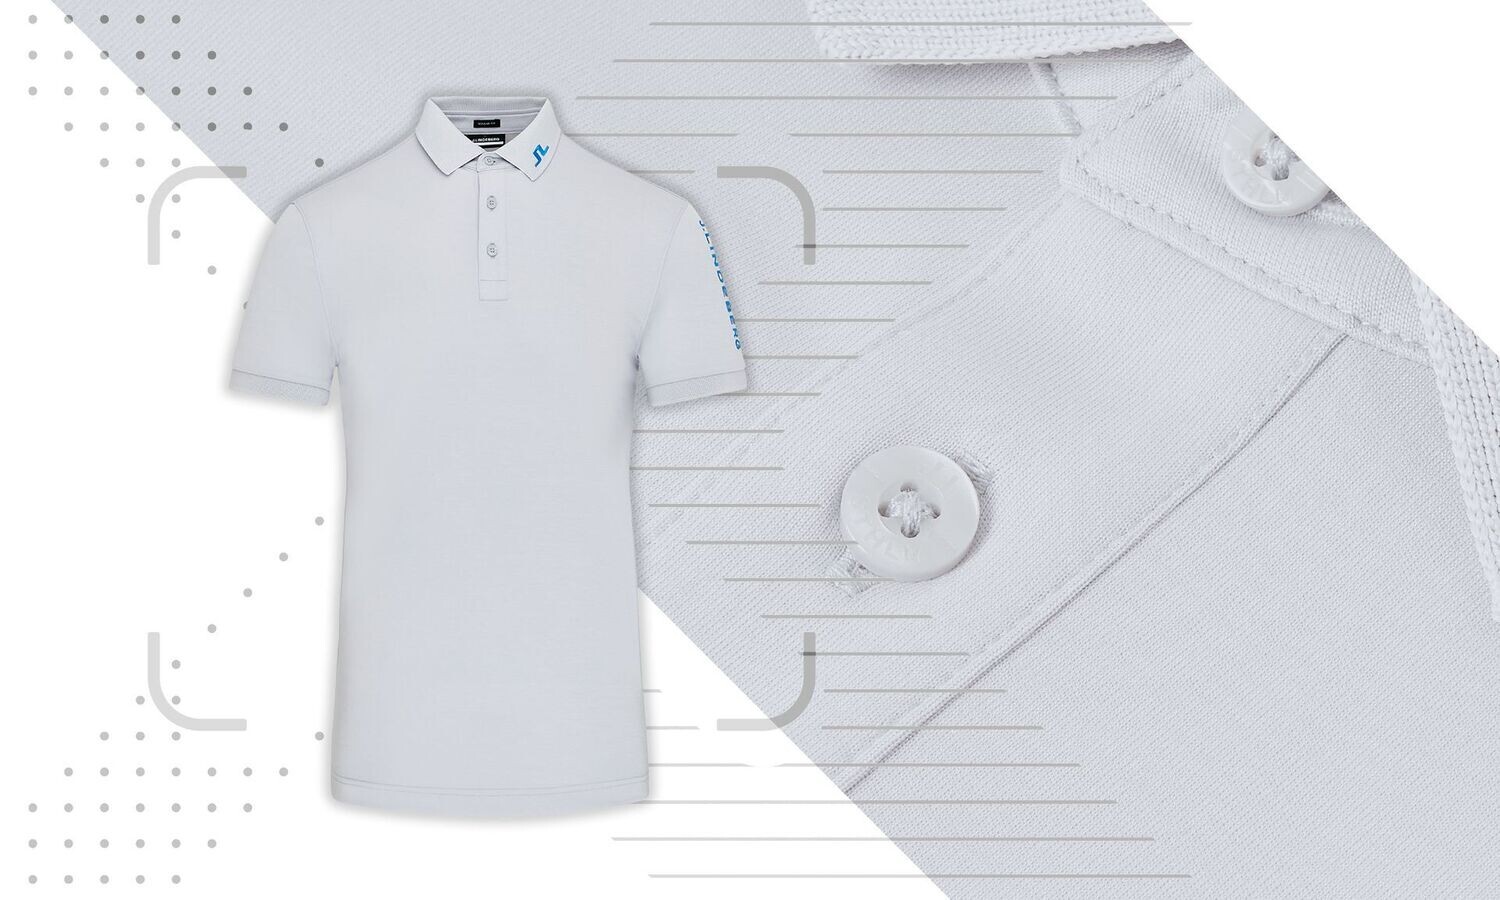 J Lindeberg Tour Tech Golf Polo Shirt - JL Light Grey Melange, Size: Medium